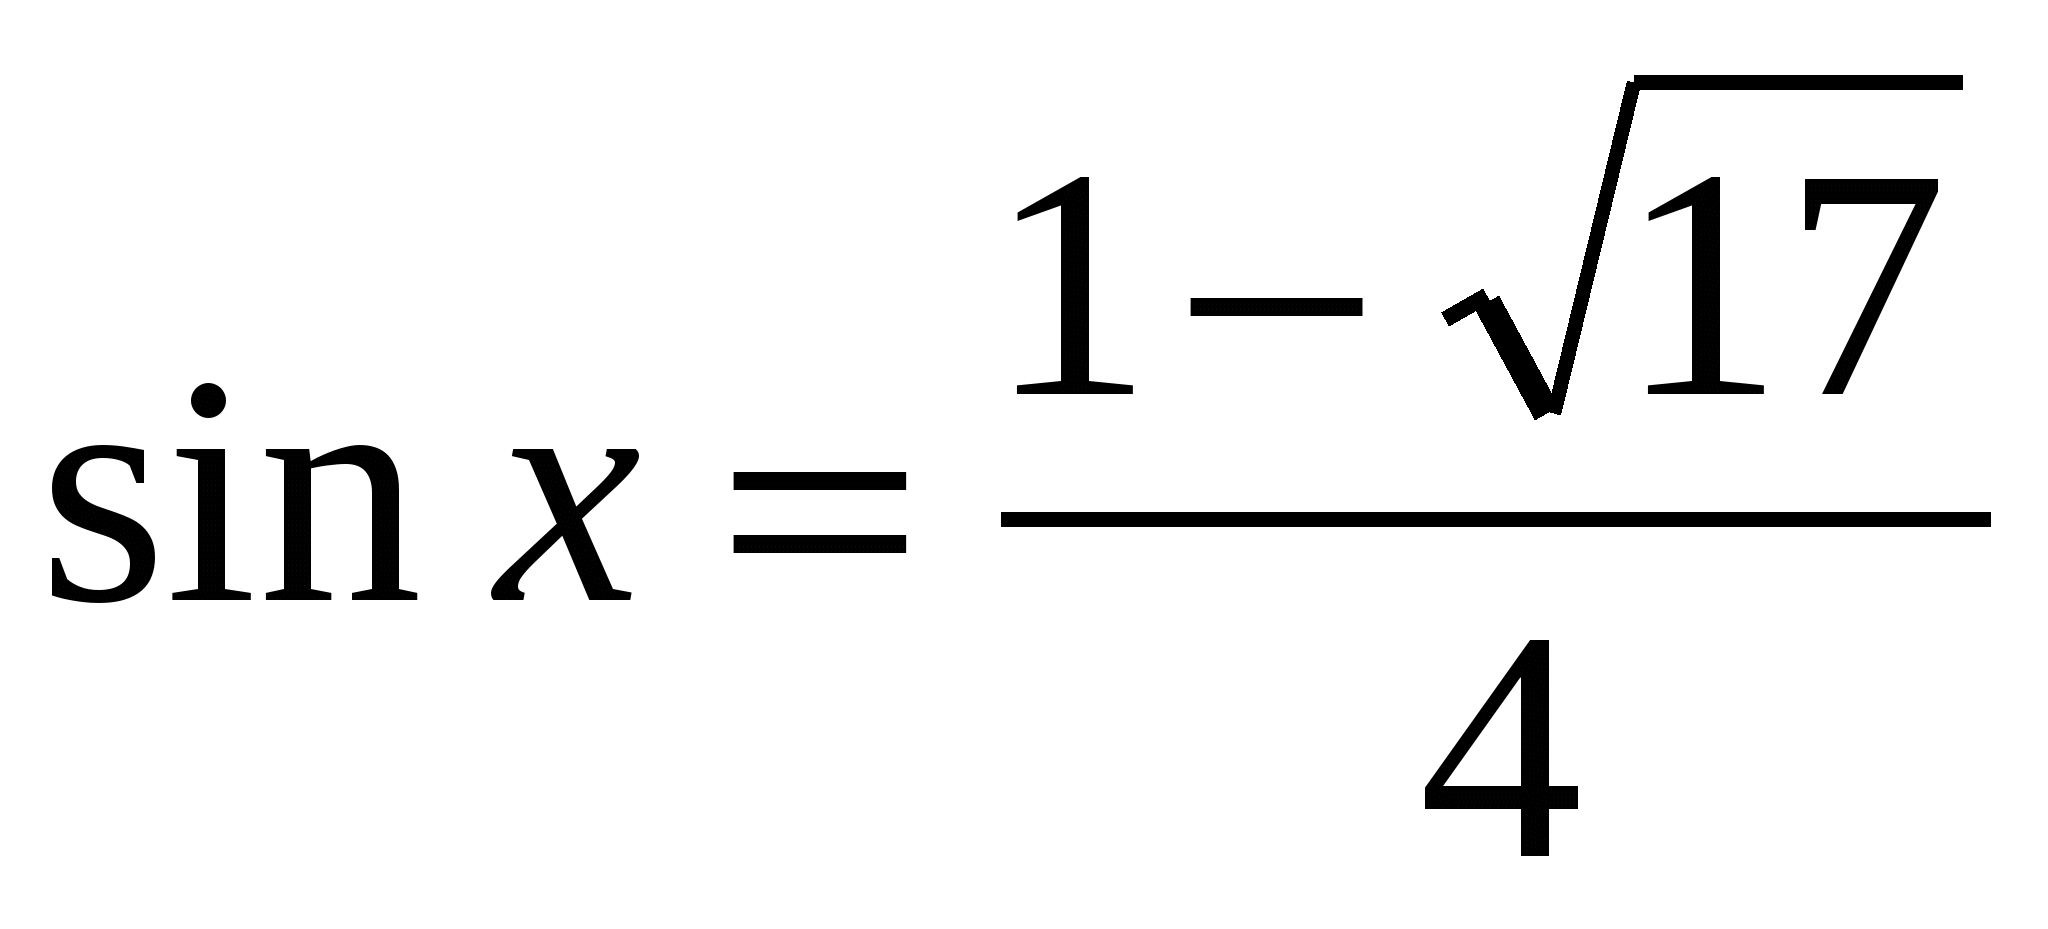 Урок алгебры в 10 классе. Методы решения тригонометрический уравнений.